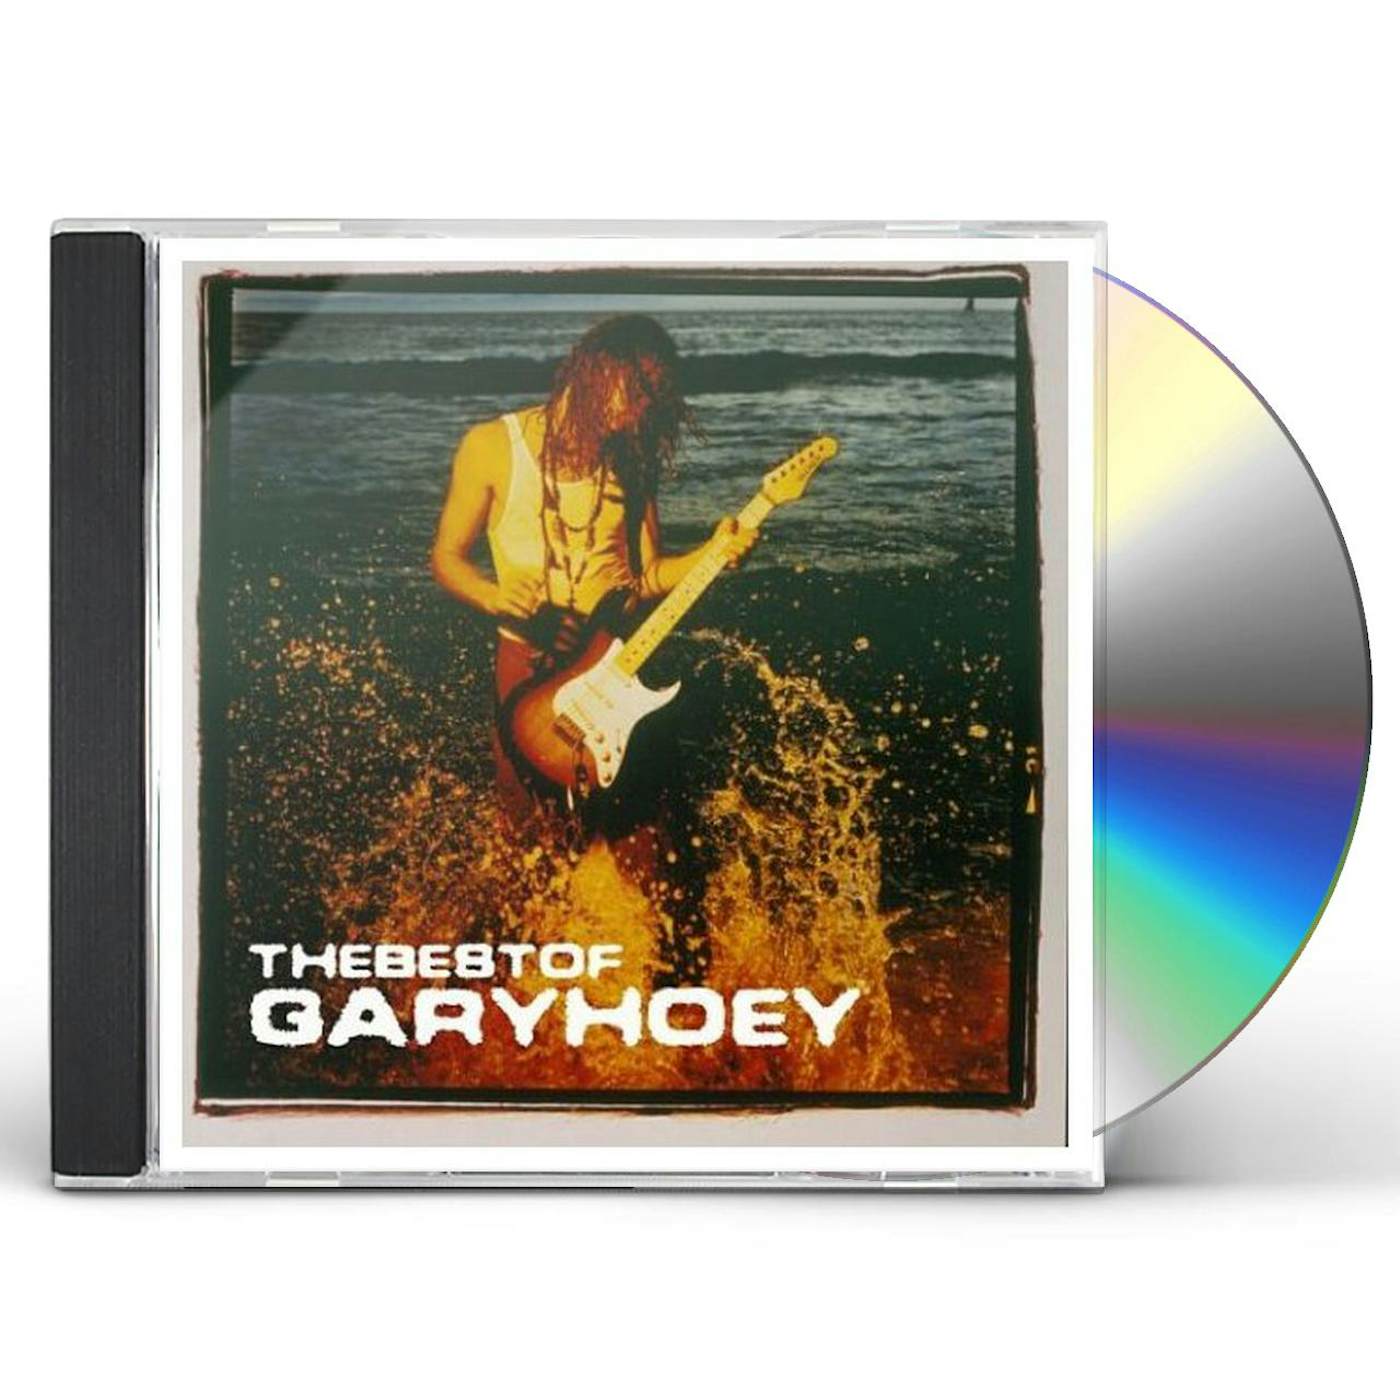 BEST OF GARY HOEY CD